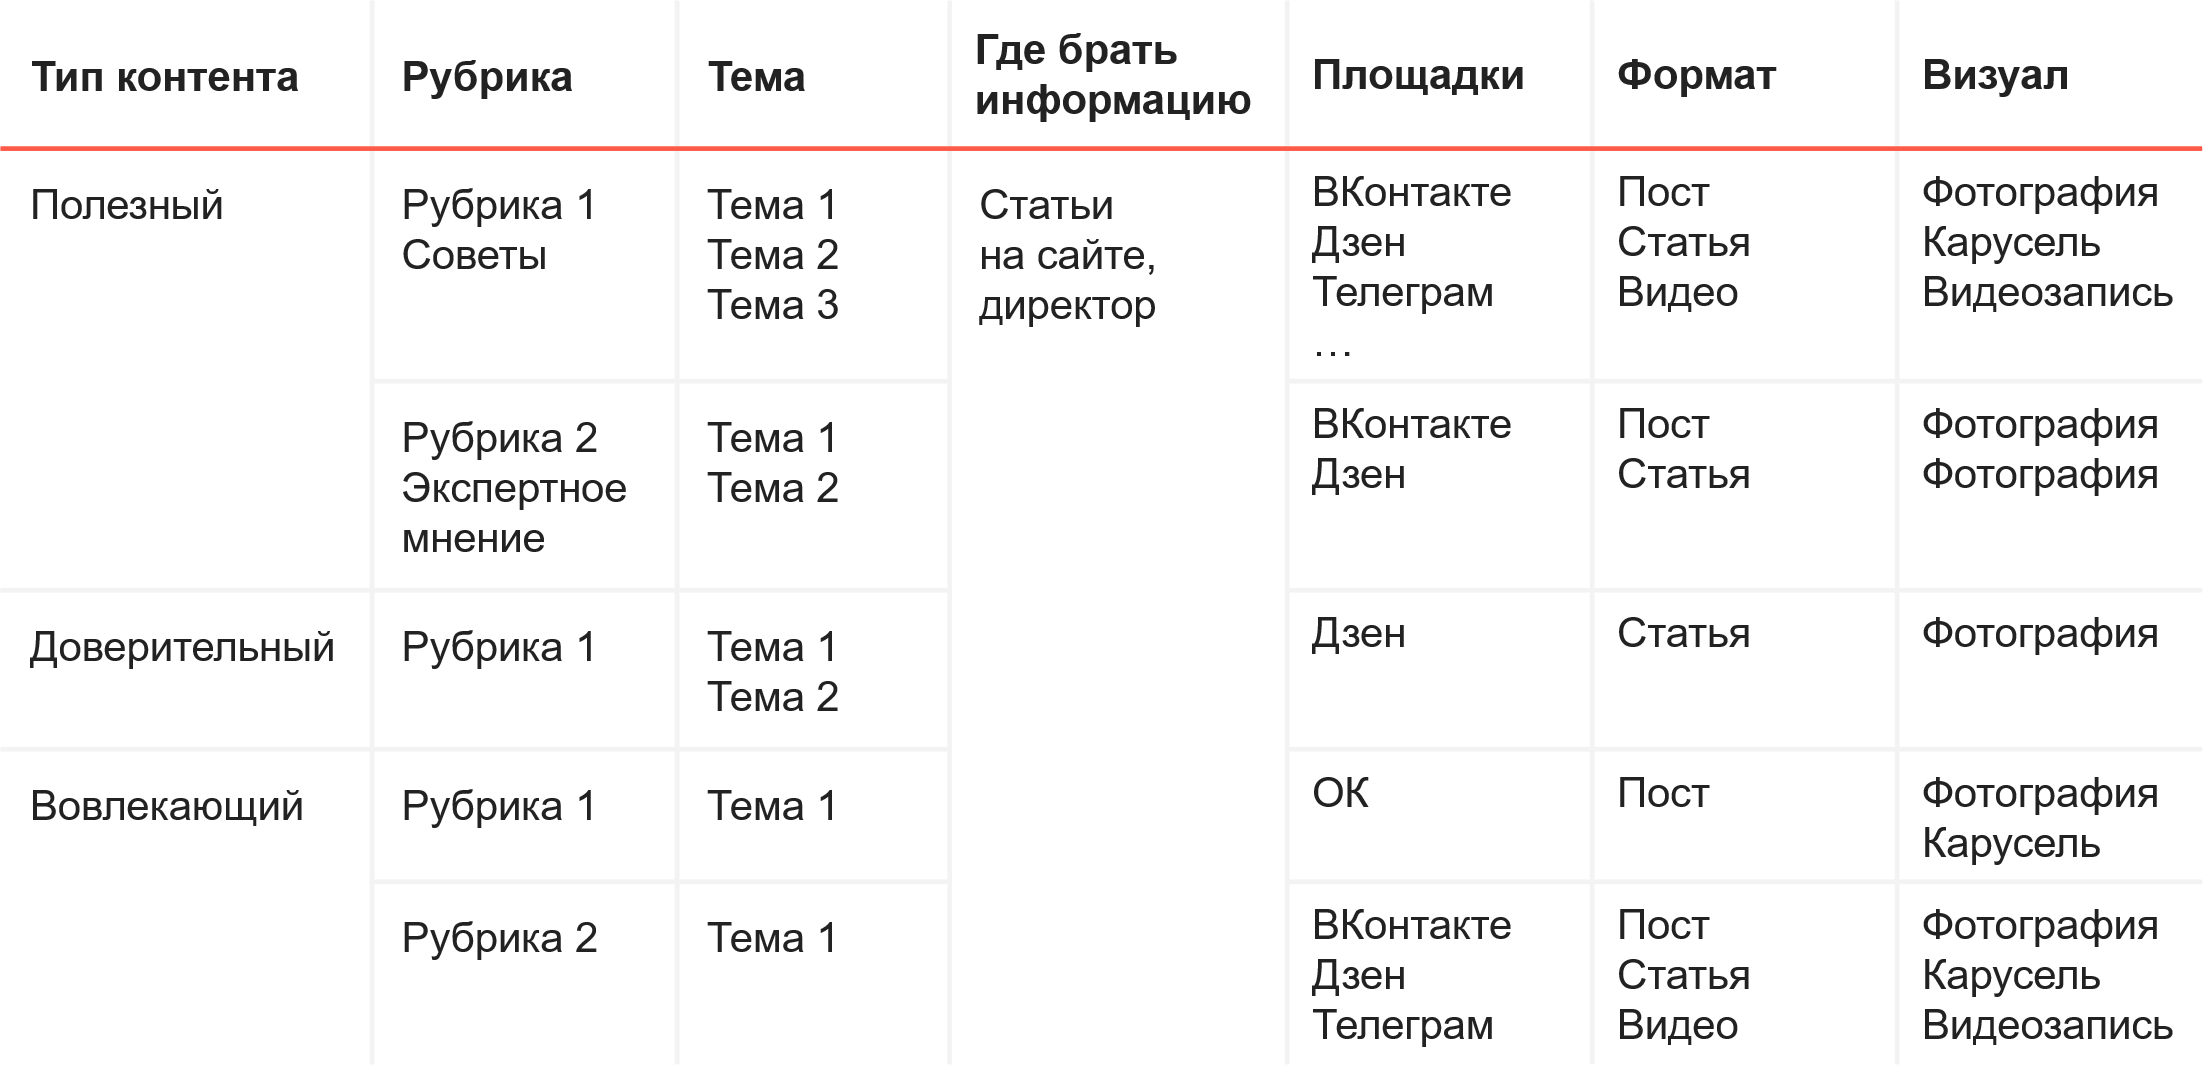 Пример контент-плана в таблицах